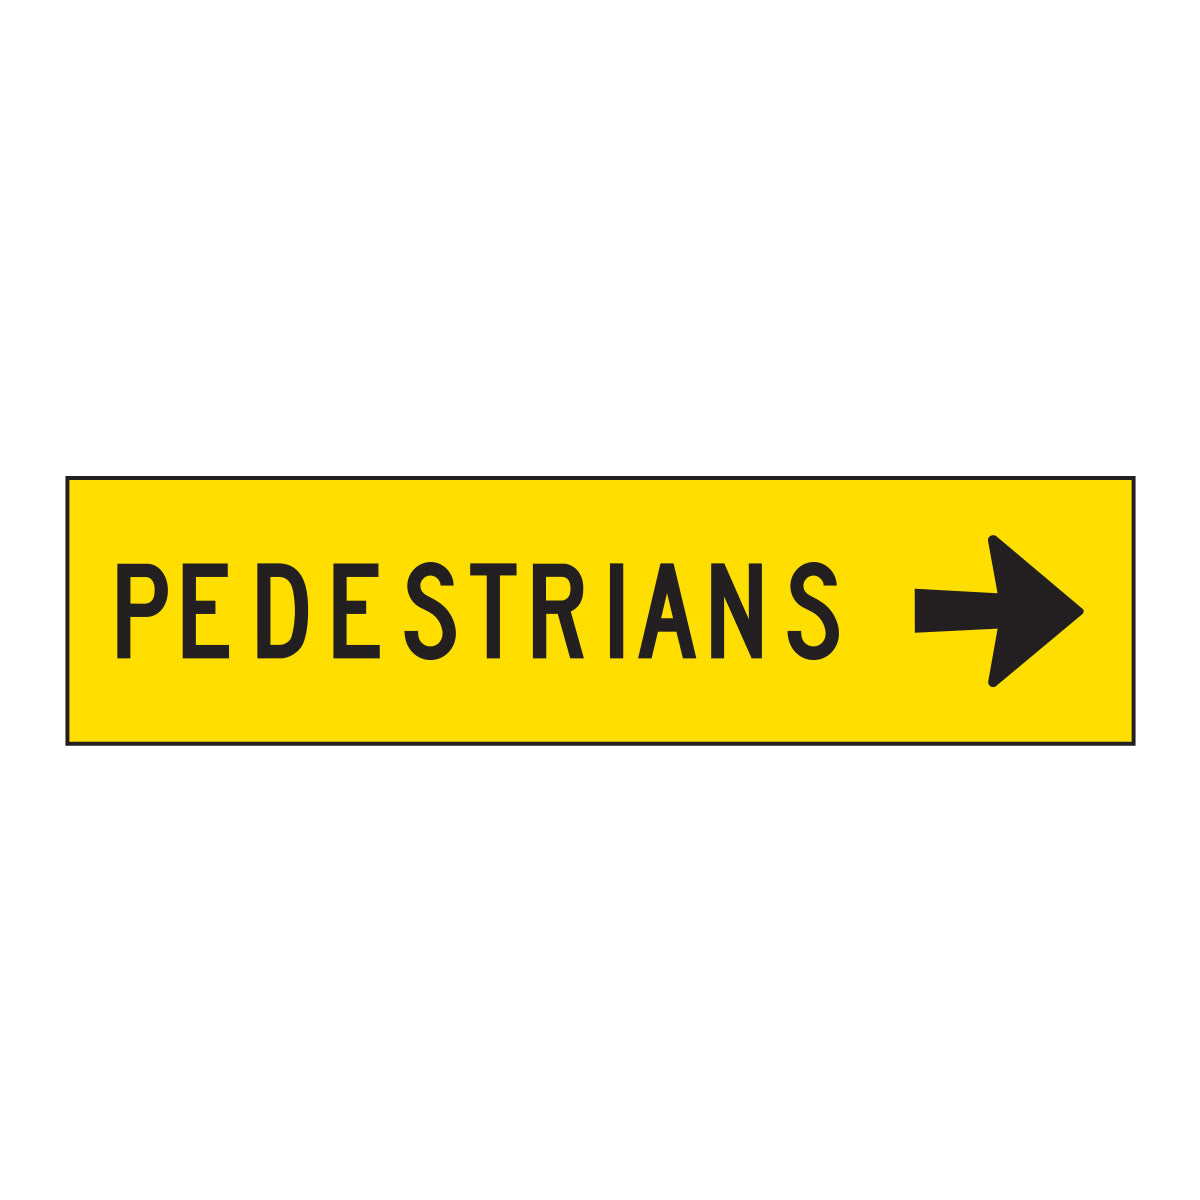 Warning: Pedestrians Right Sign